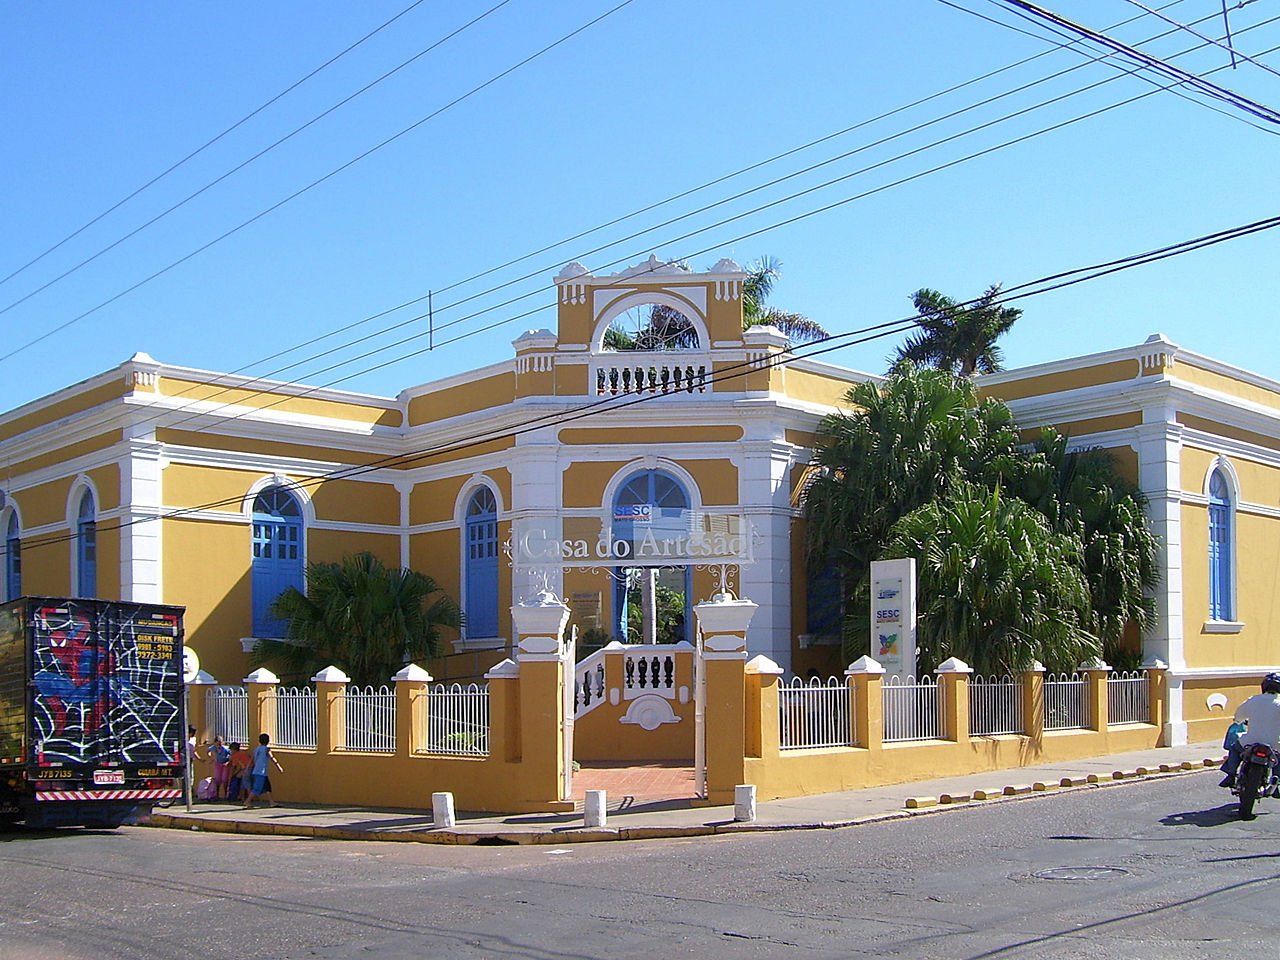 Fachada da casa do Artesão em Cuiabá.